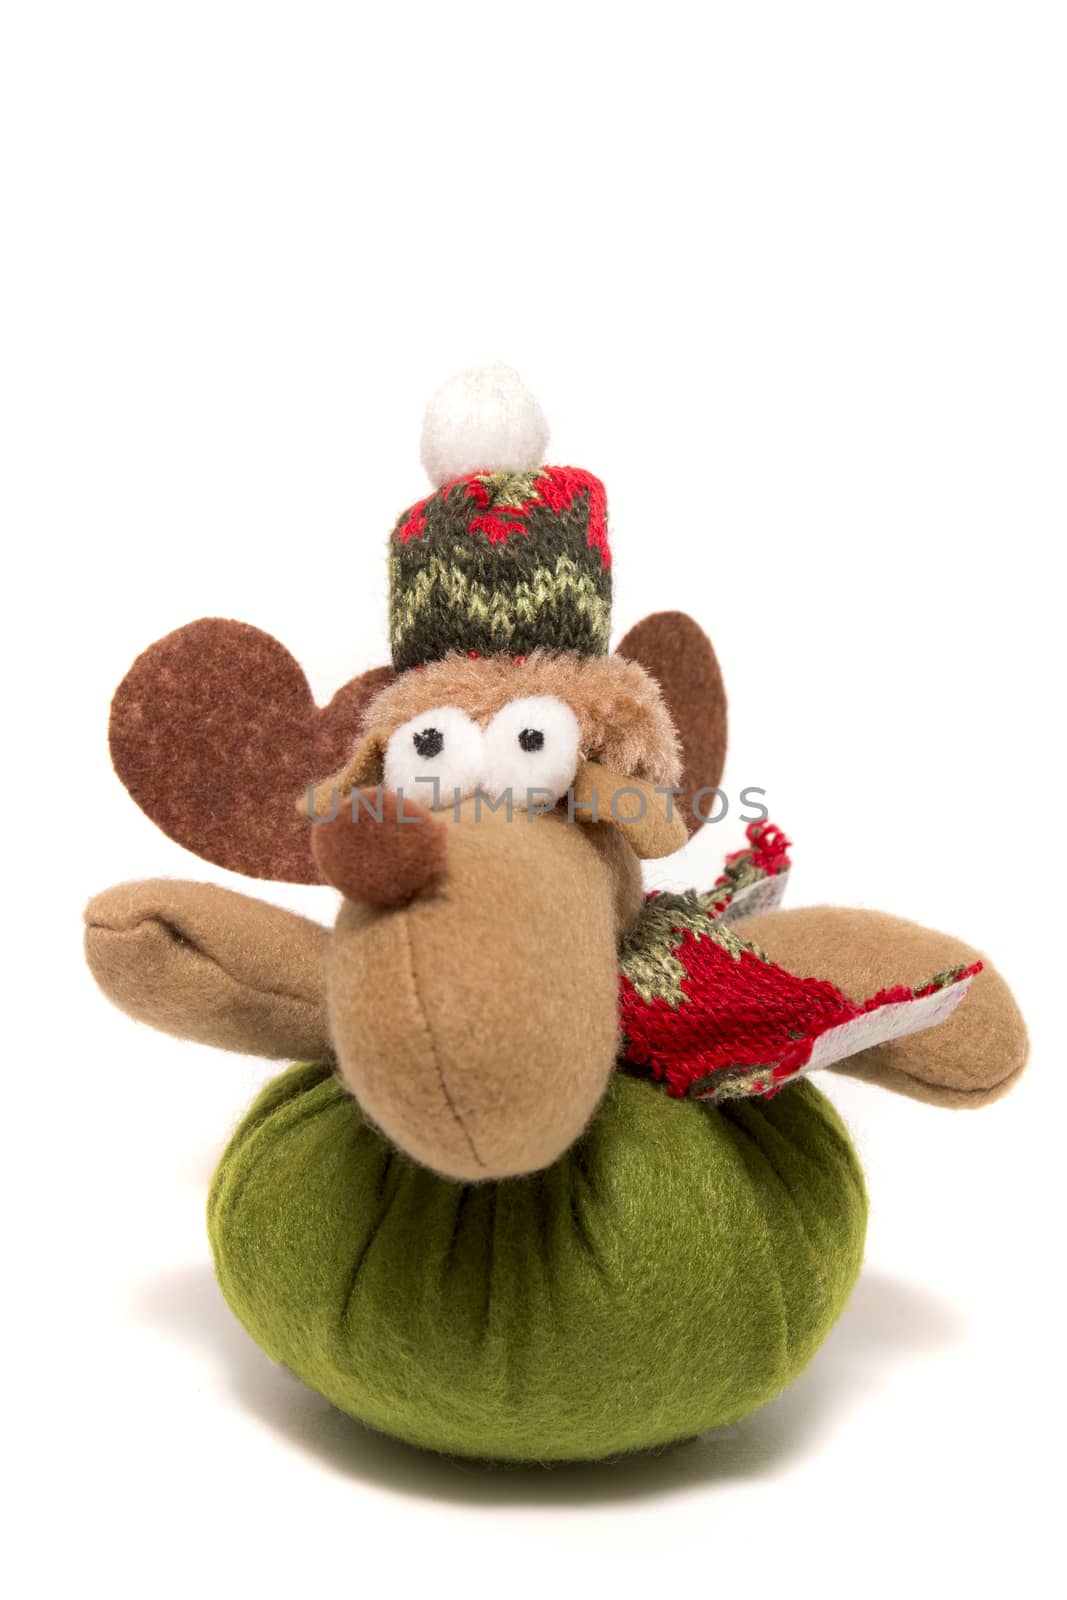 Stuffed reindeer toy by membio